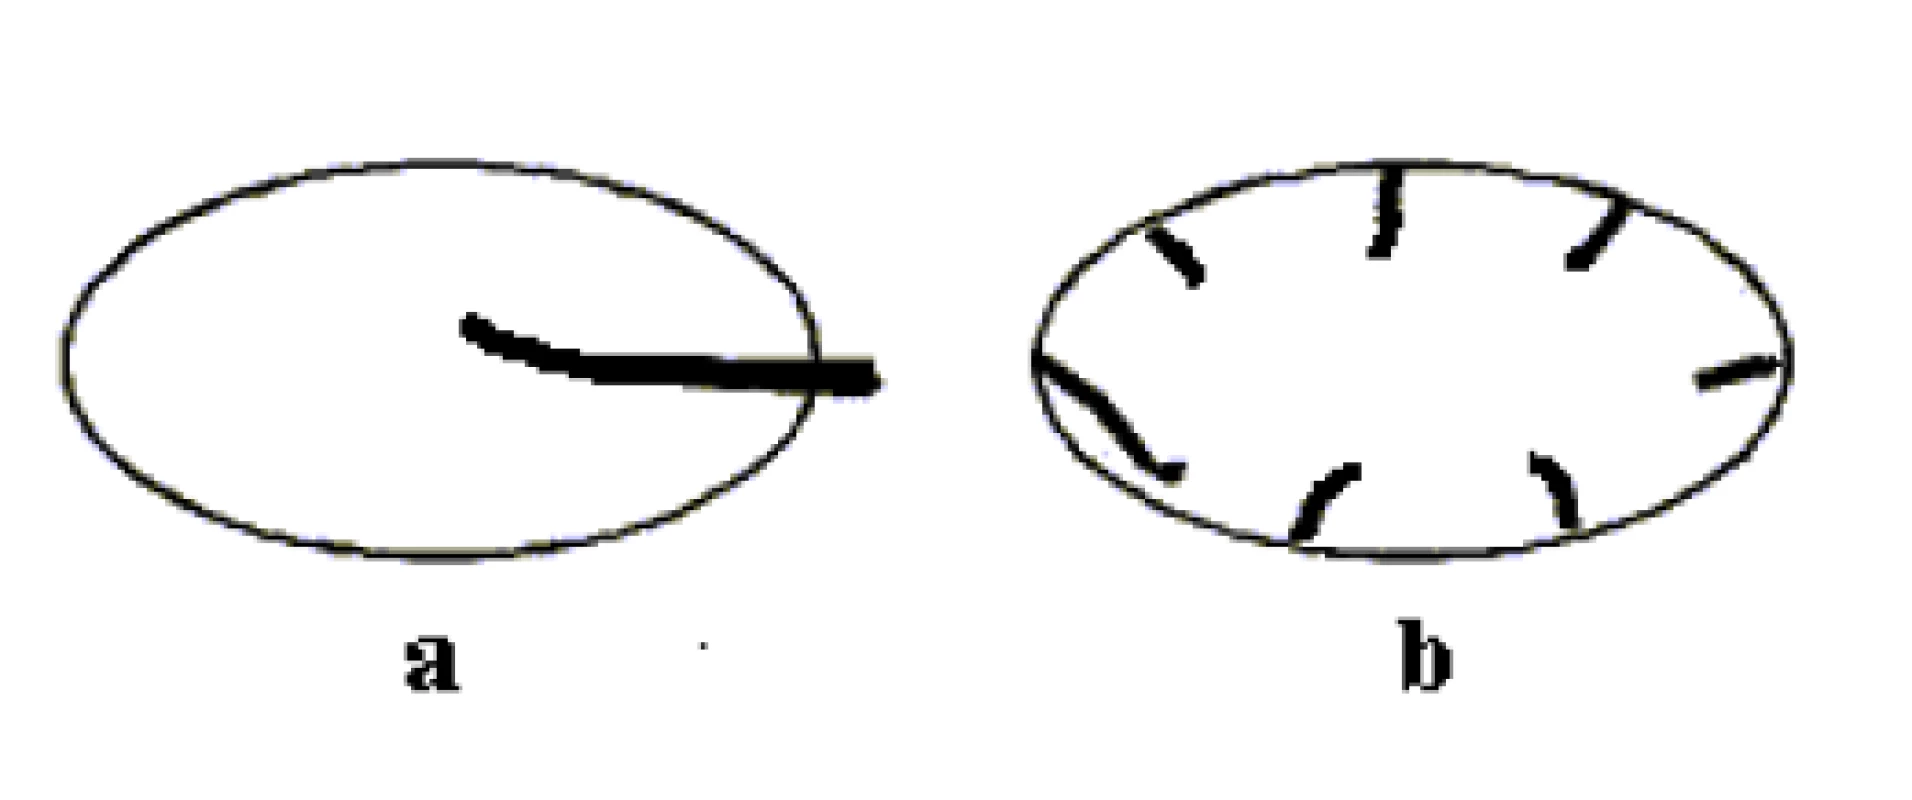 Schéma dvou základních typů prokrvení uzlin: a - hilový (centrální) typ, b - periferní typ.